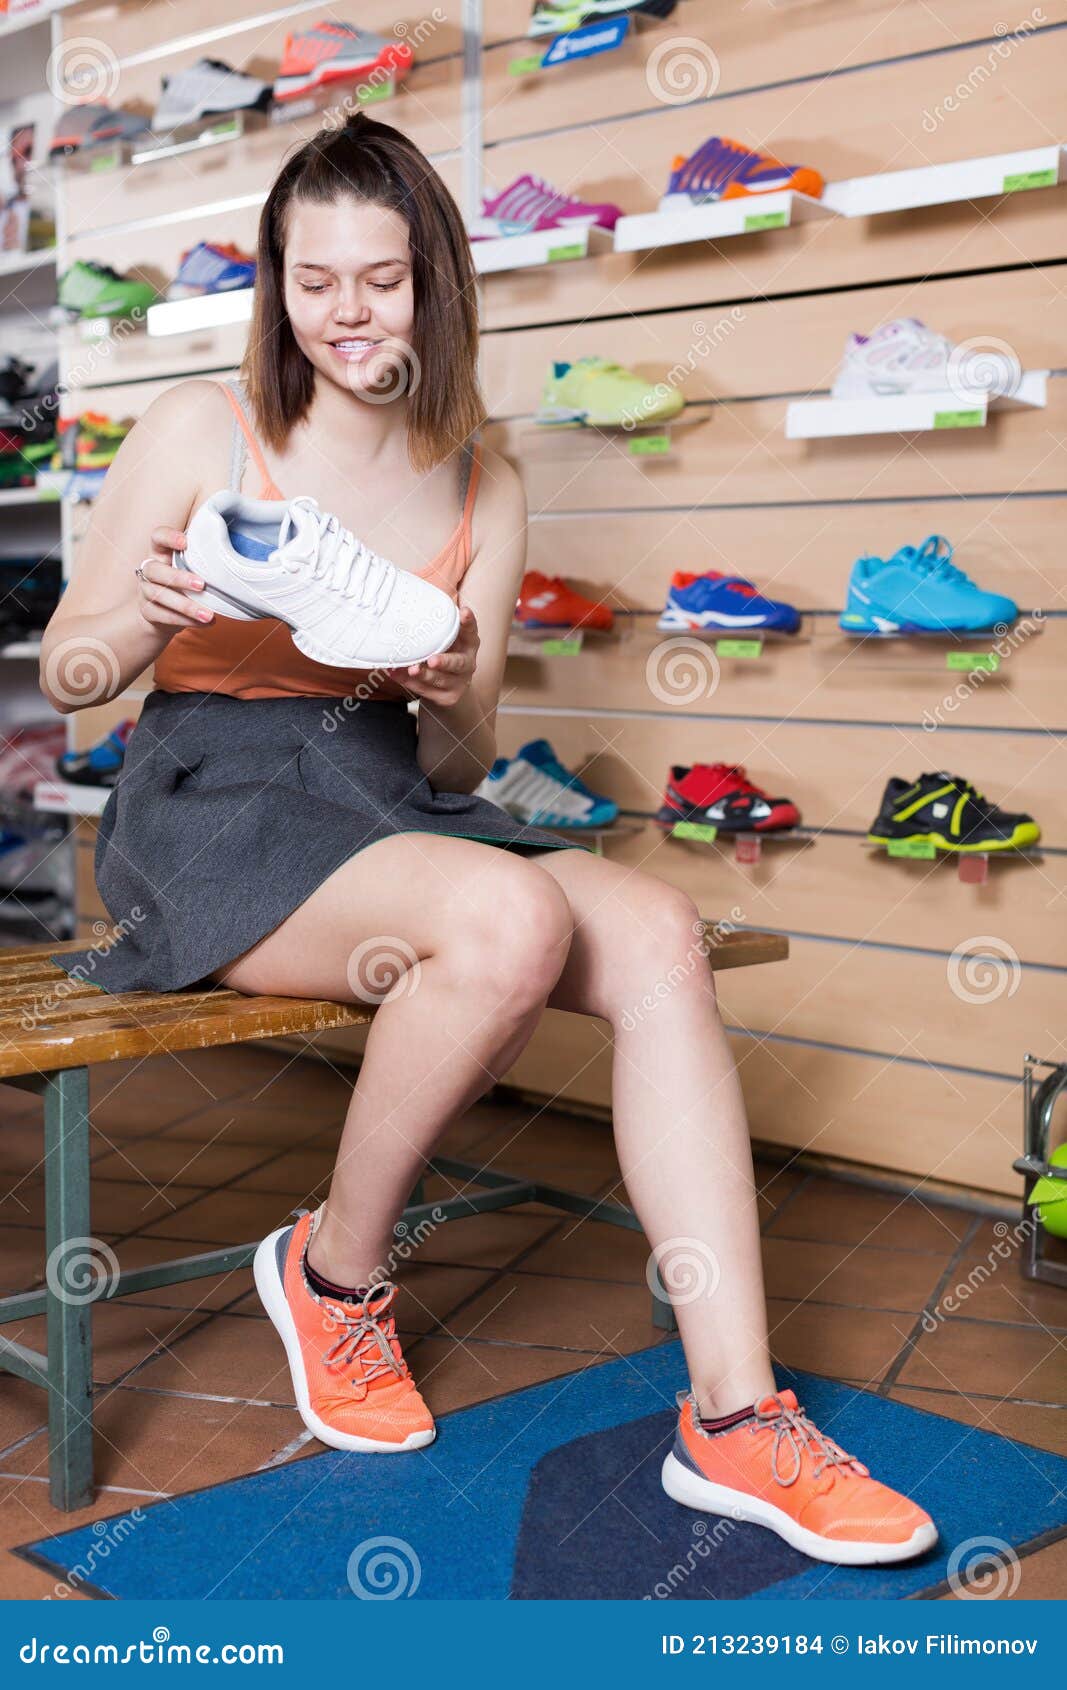 Mujer Zapatillas Deportivas Profesionales Sport Shop Foto de archivo - Imagen de feliz, 213239184